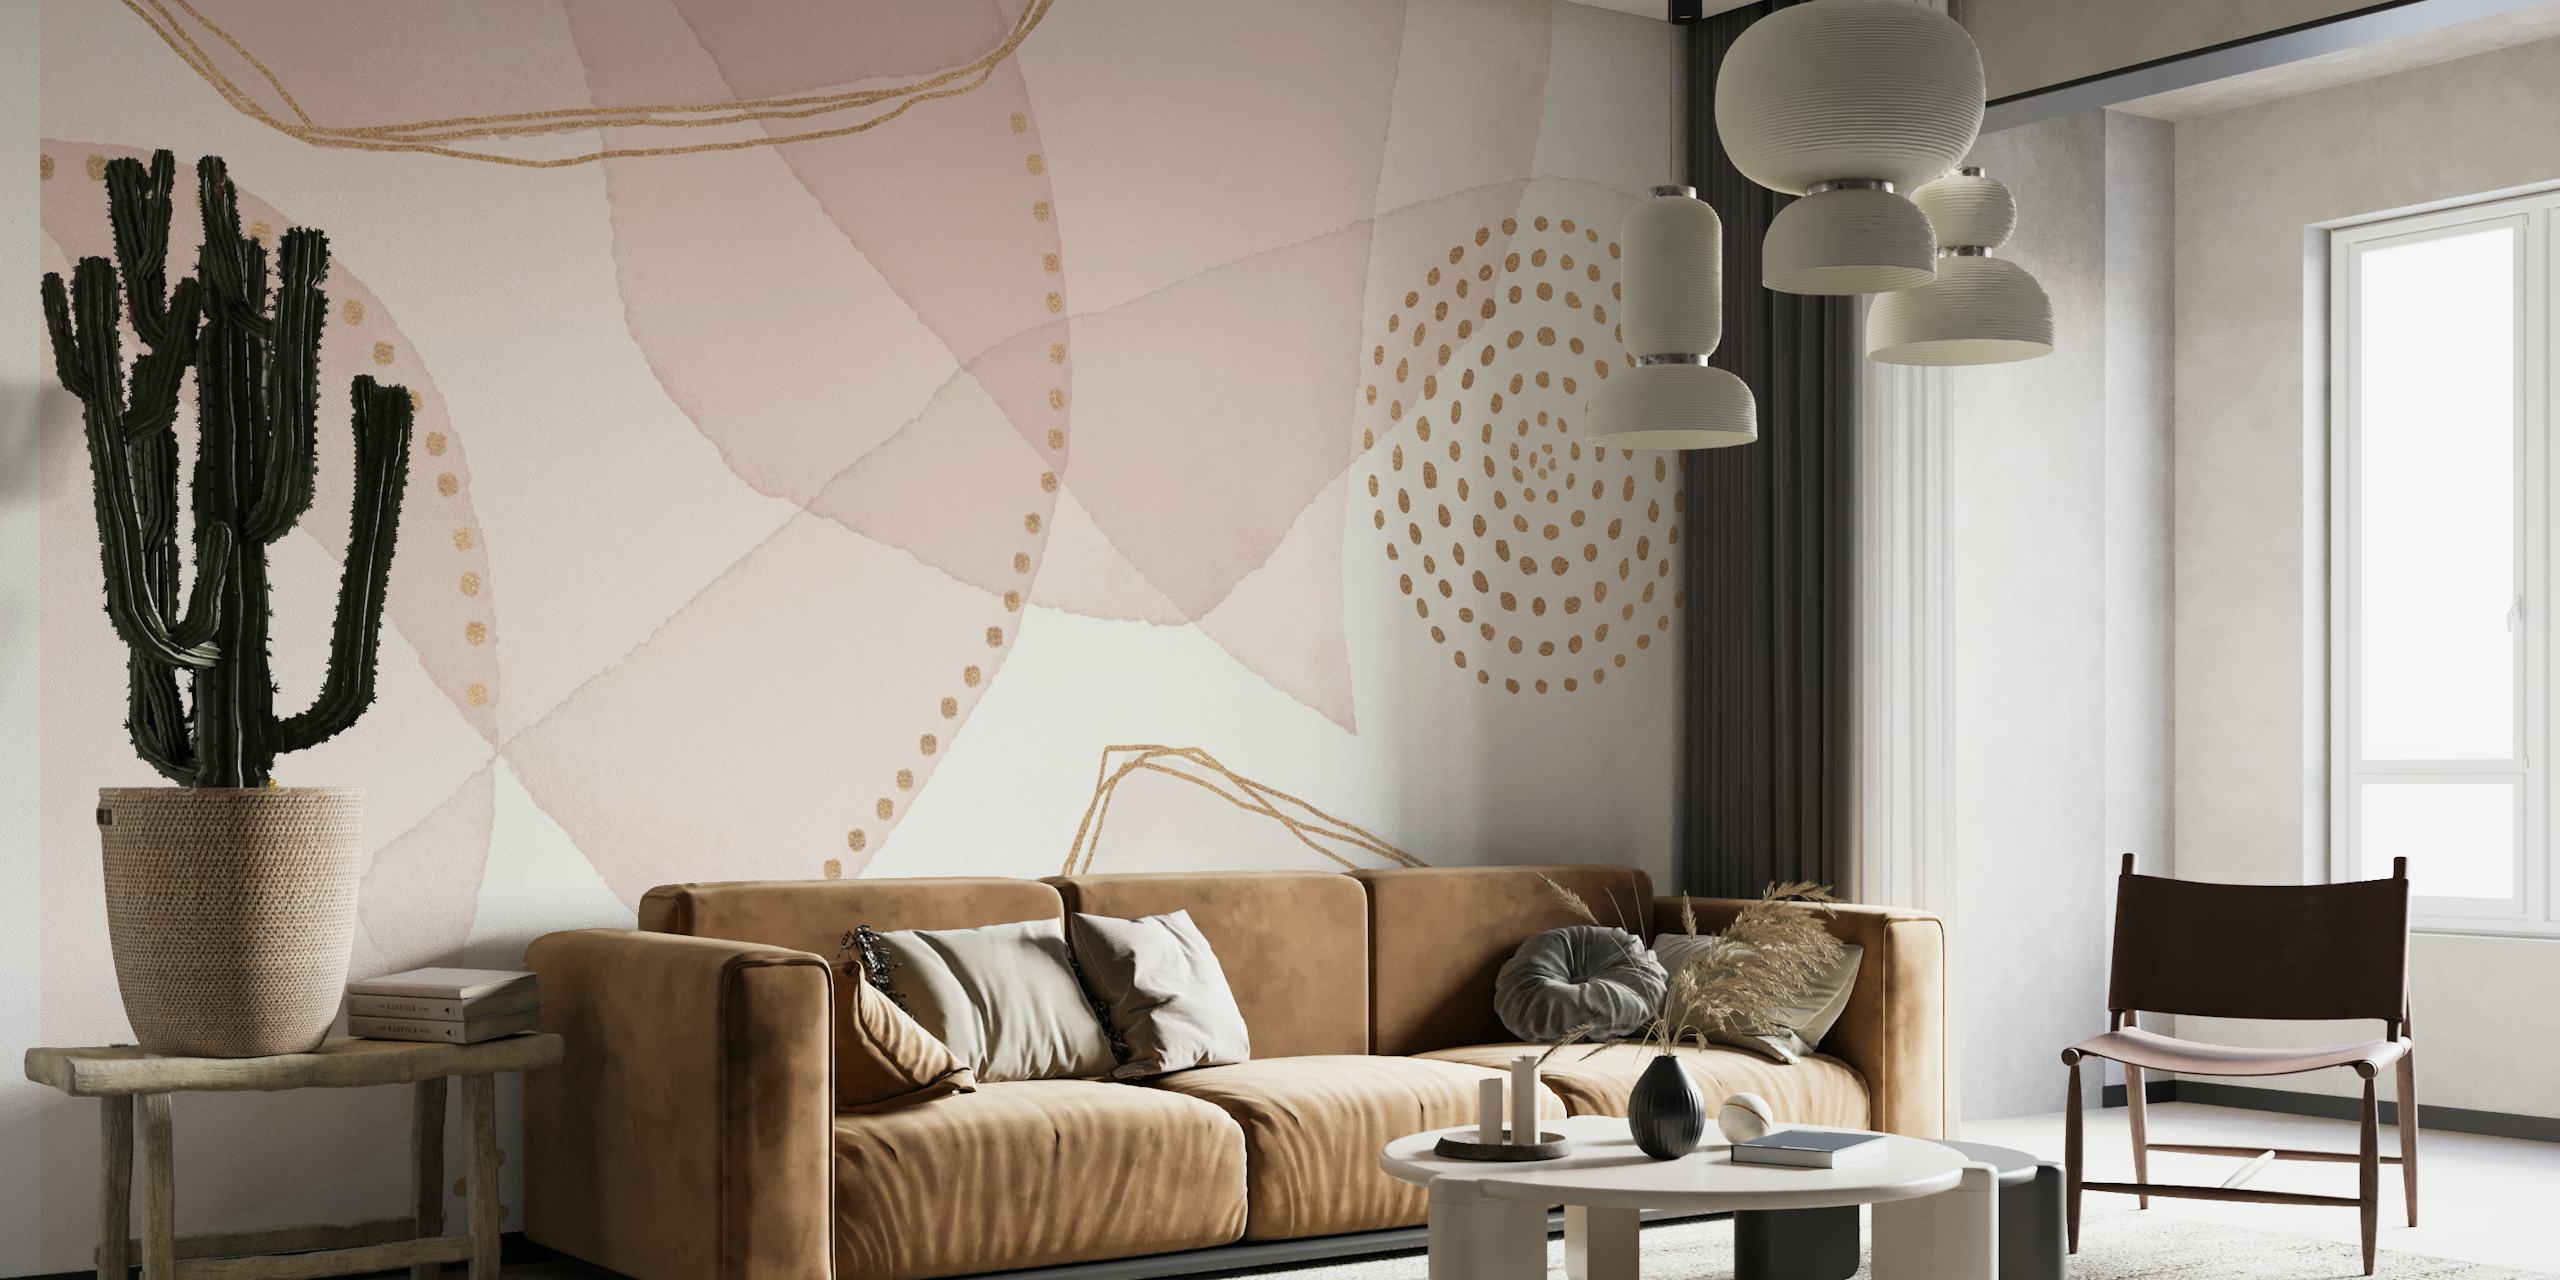 Mural de parede com formas abstratas em tons pastéis e uma vibração boêmia de luxo